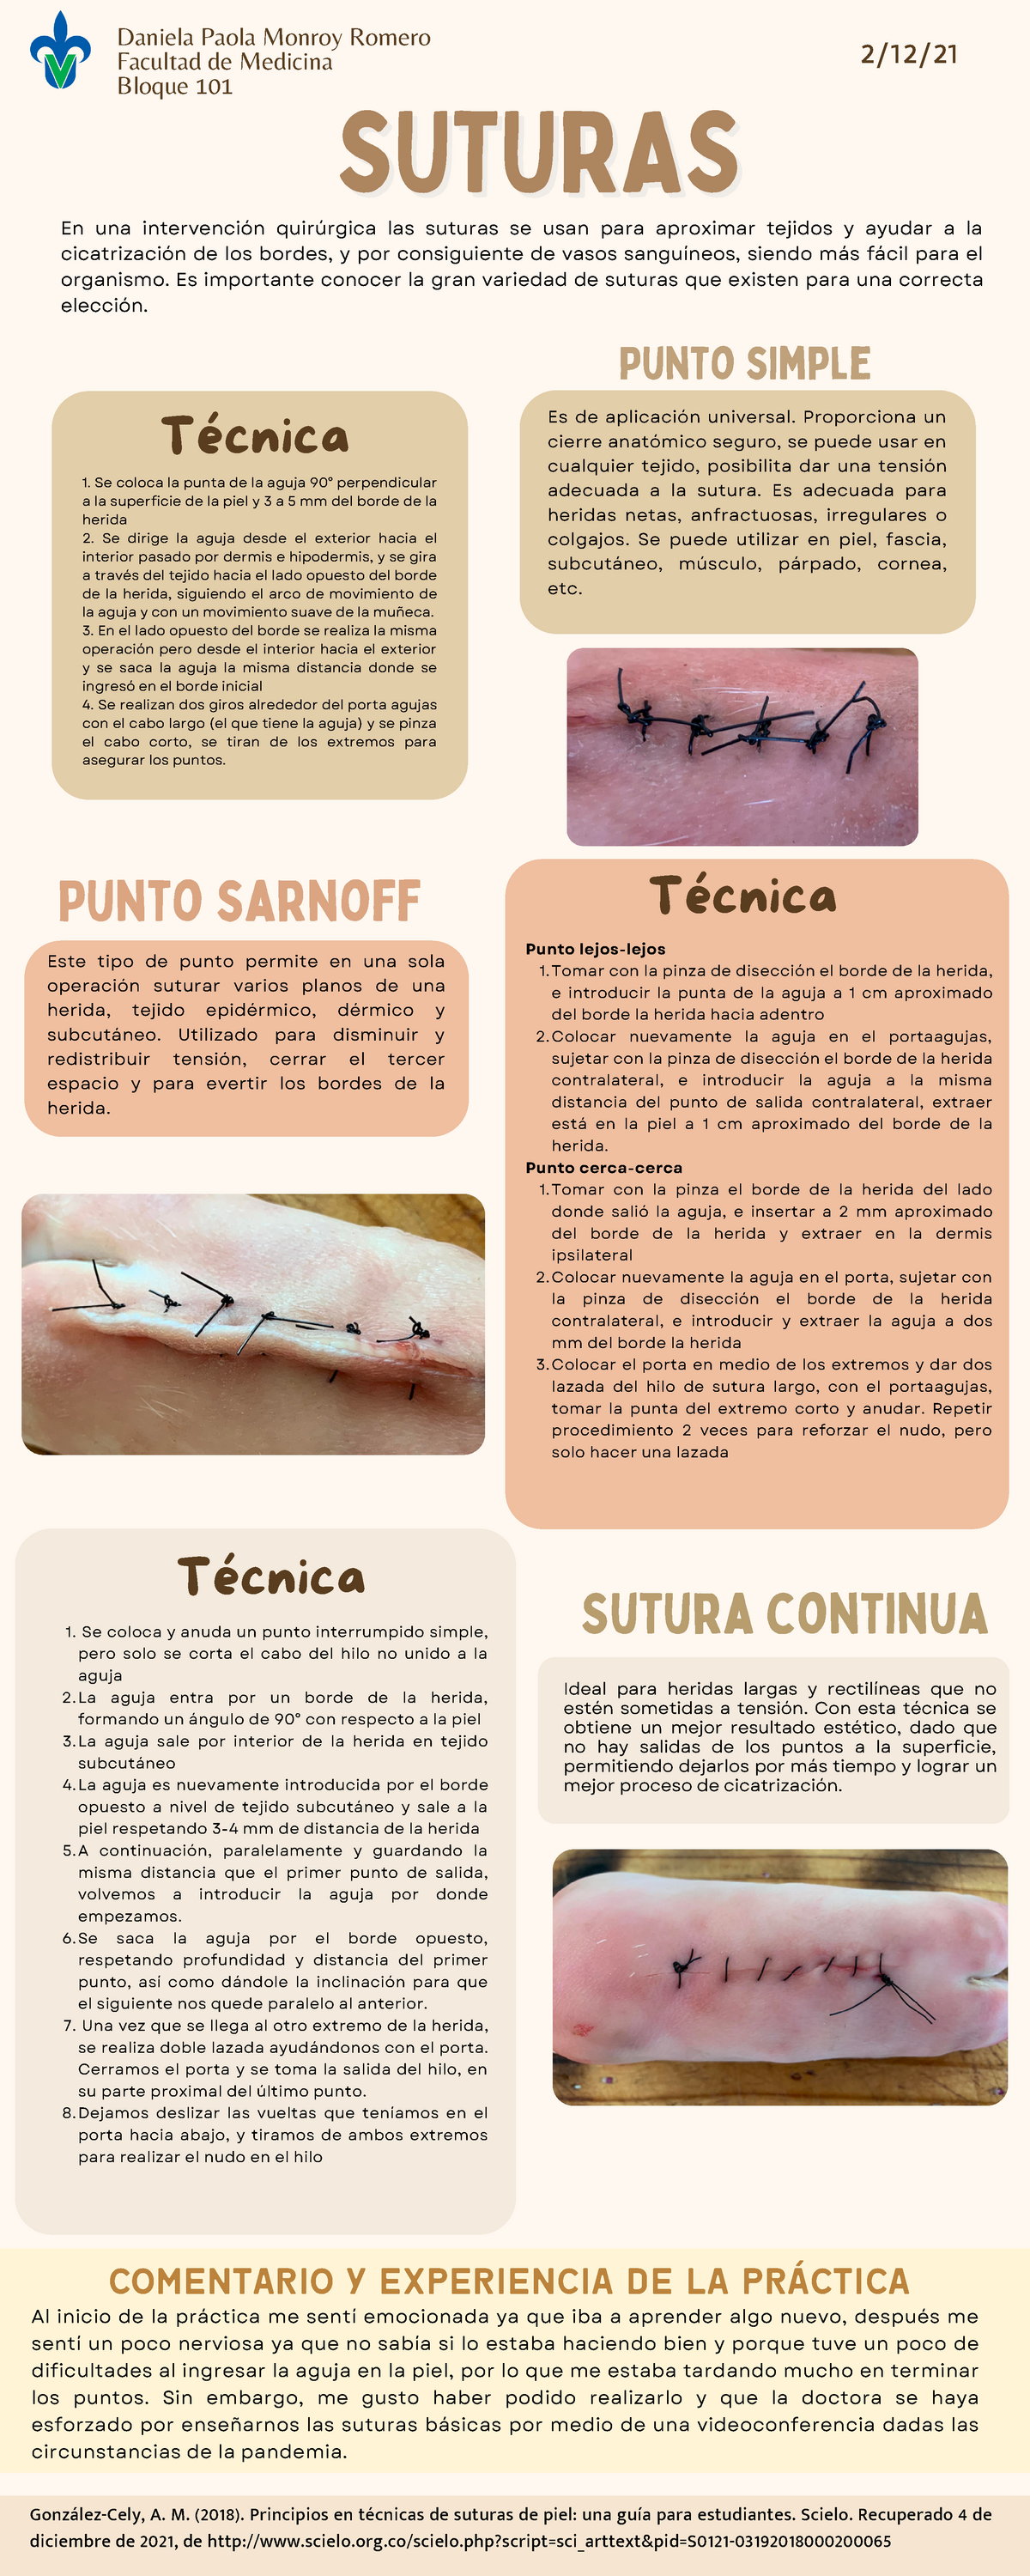 medico_clasico - TIPOS DE SUTURAS Las suturas es cualquier tipo de material  utilizado para ayudar a la cicatrización de una herida, mediante la  aproximación de los bordes con el objetivo de mantenerlos